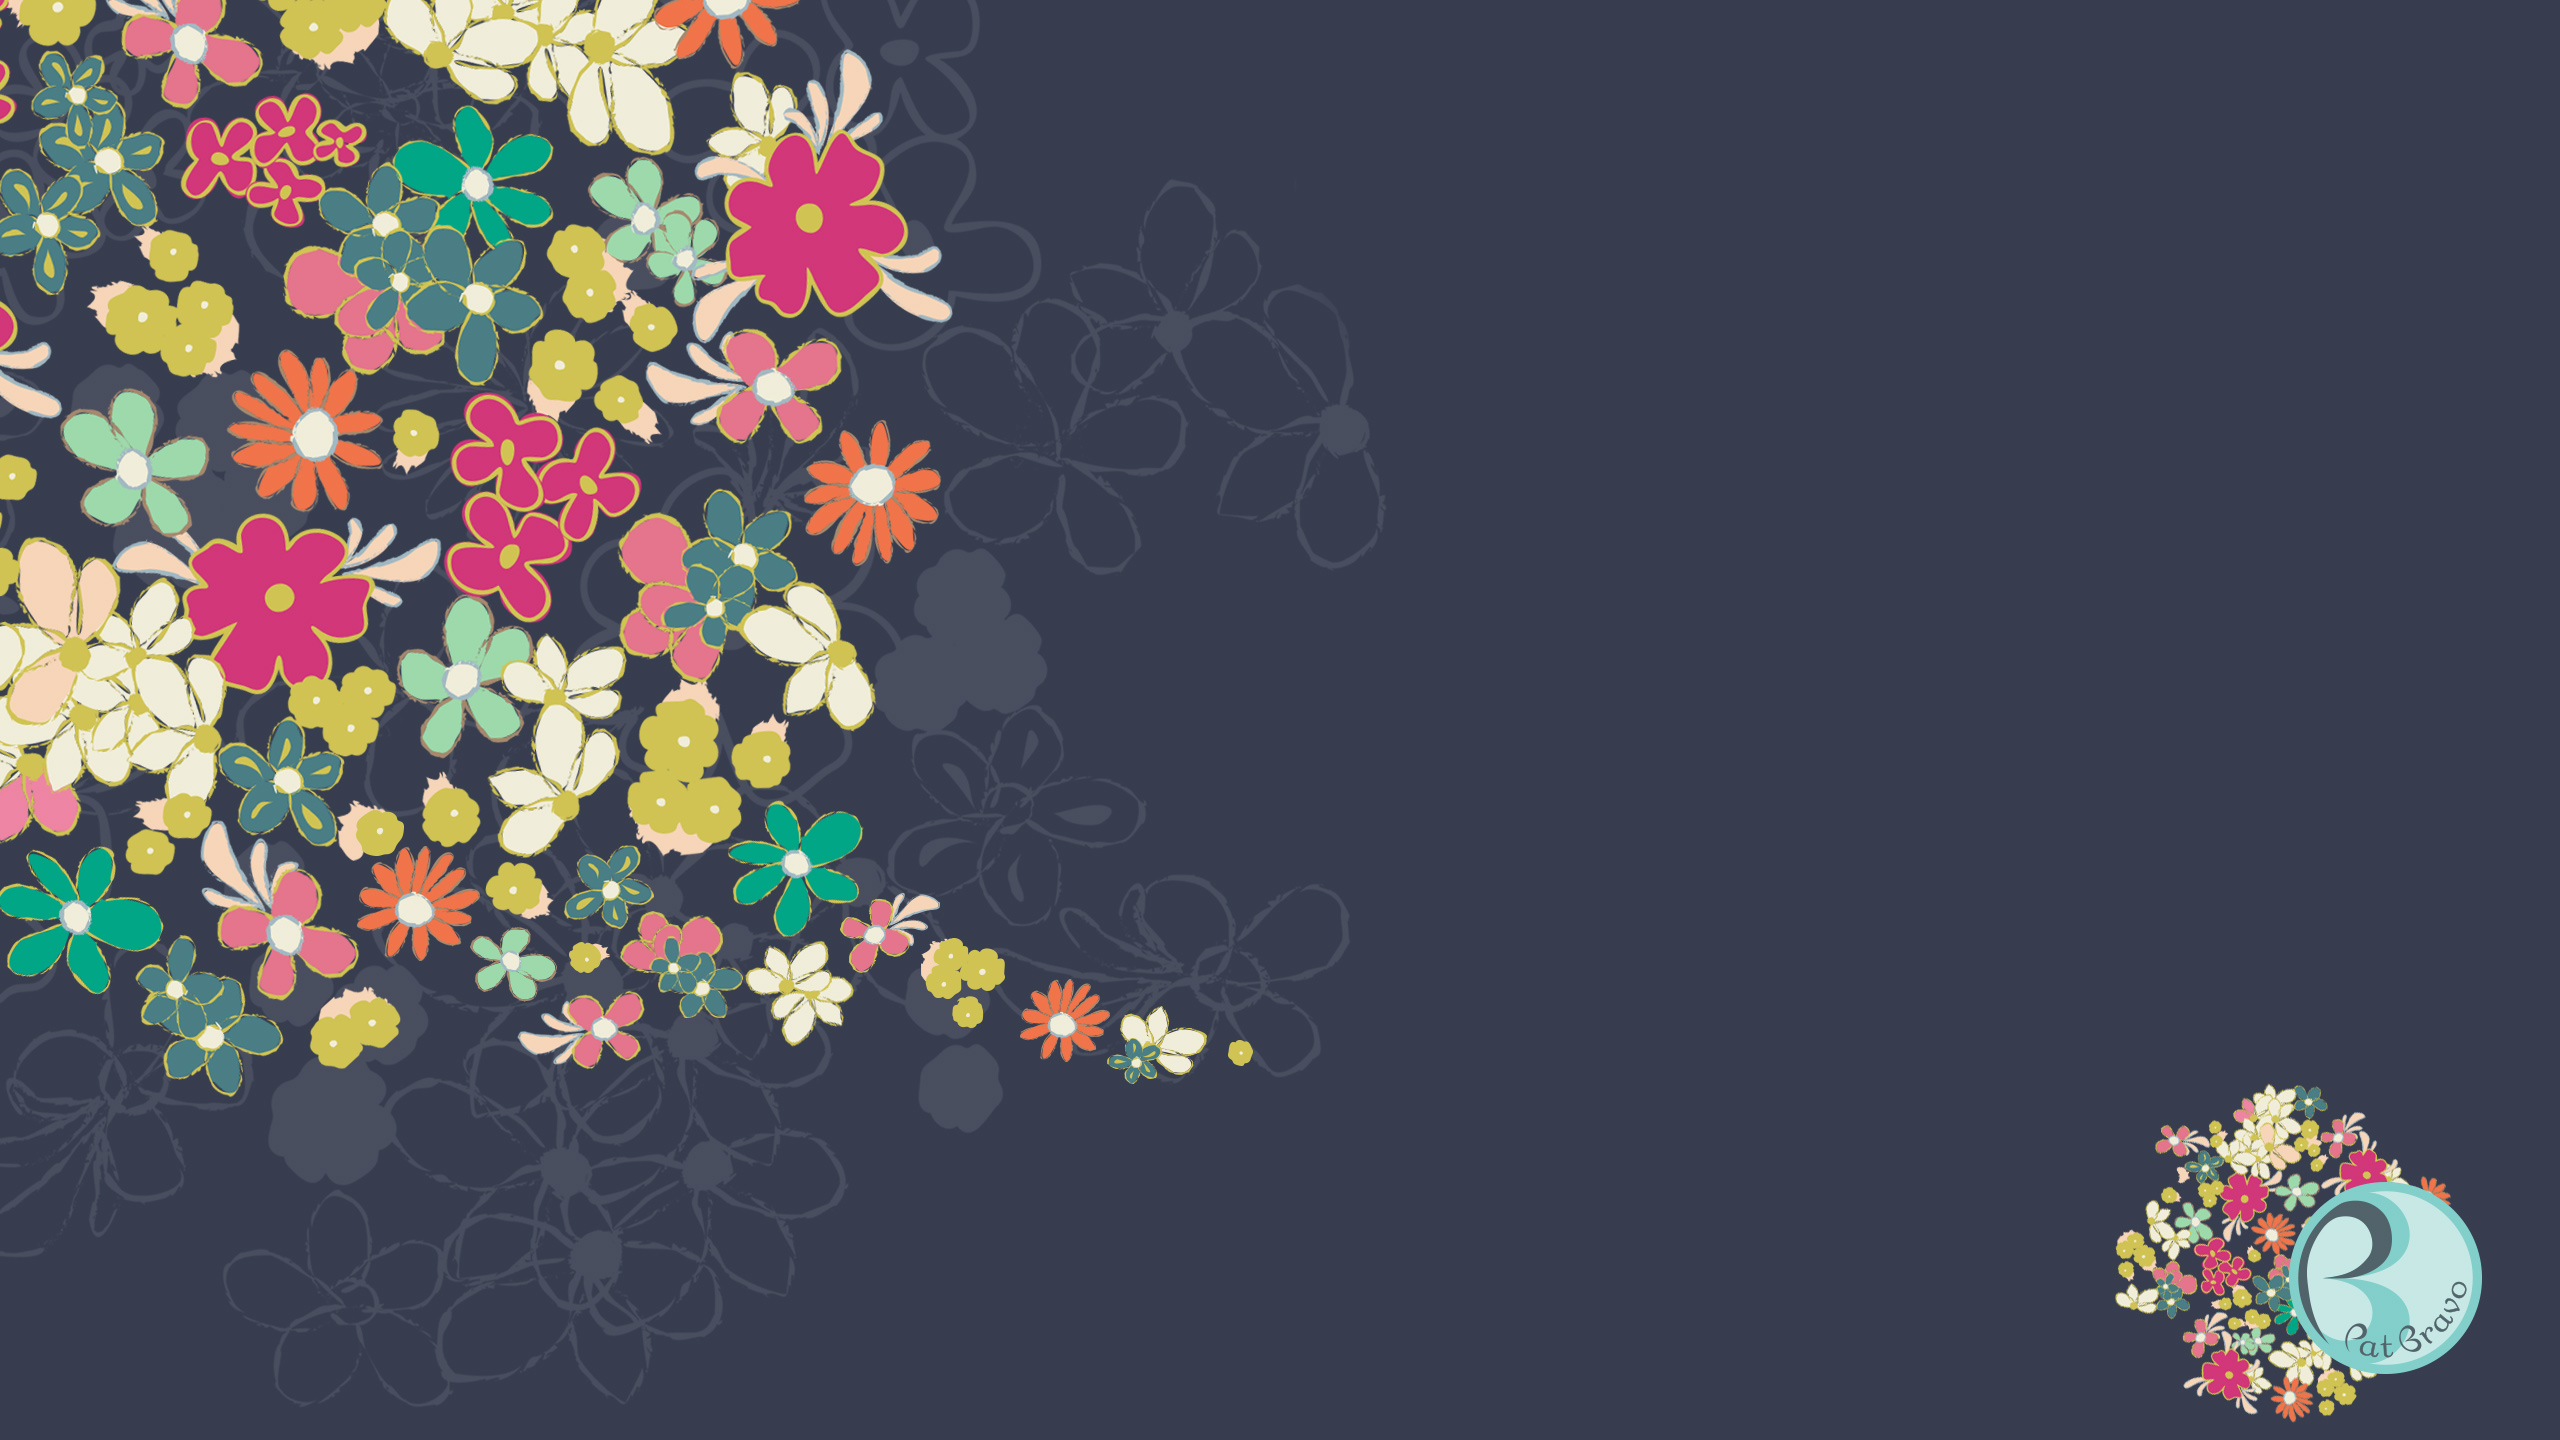 2550 x 1440 wallpaper,floral design,pattern,illustration,graphic design,font